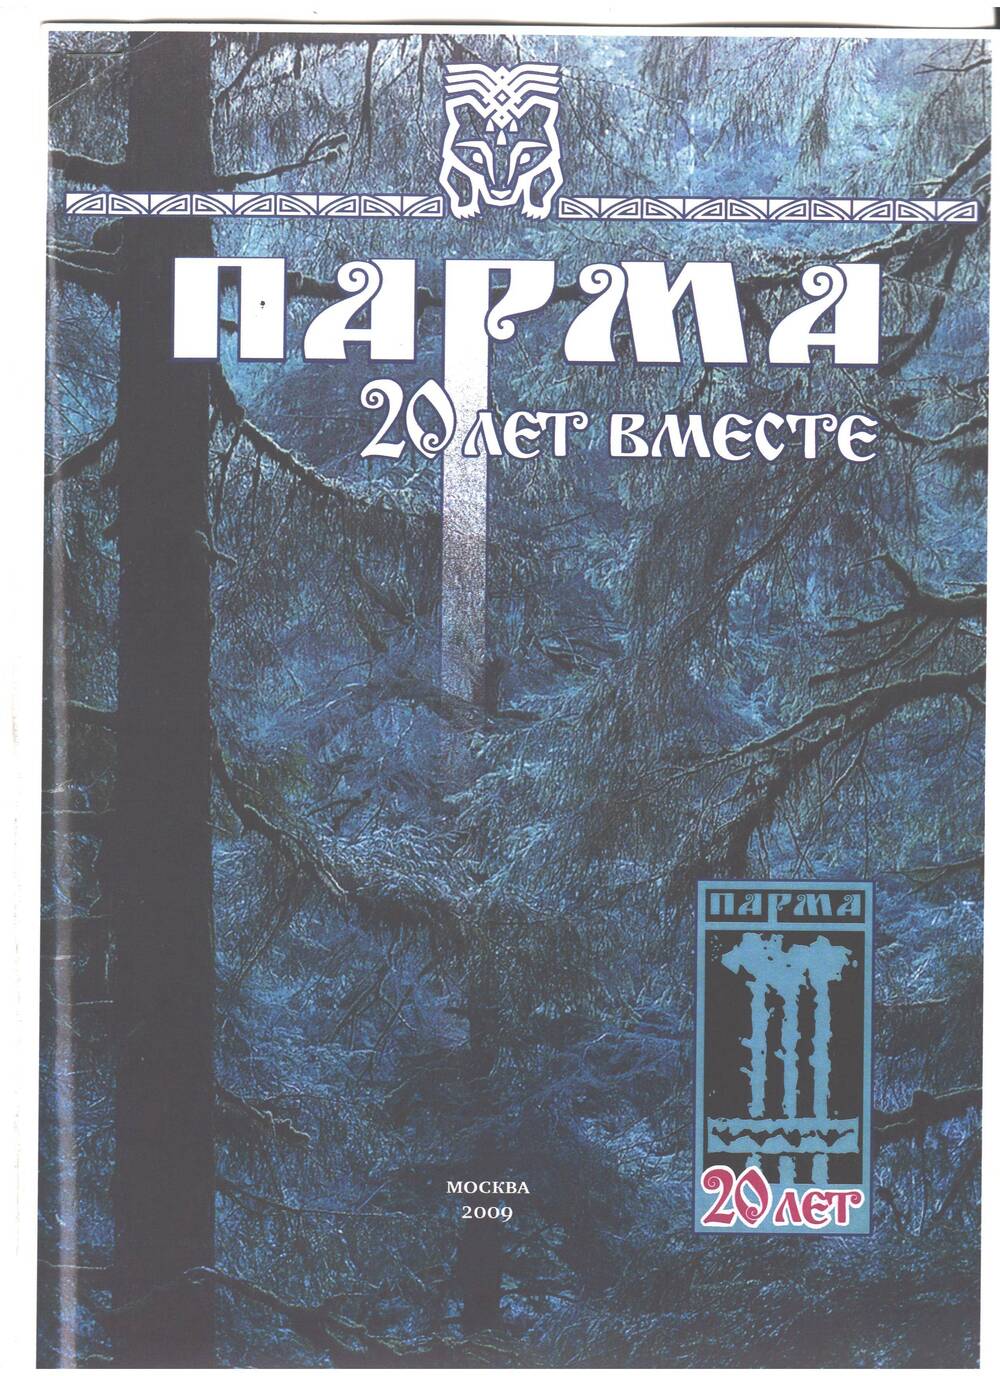 Ксерокопия Страницы журнала Парма, 2009 г., специальный выпуск